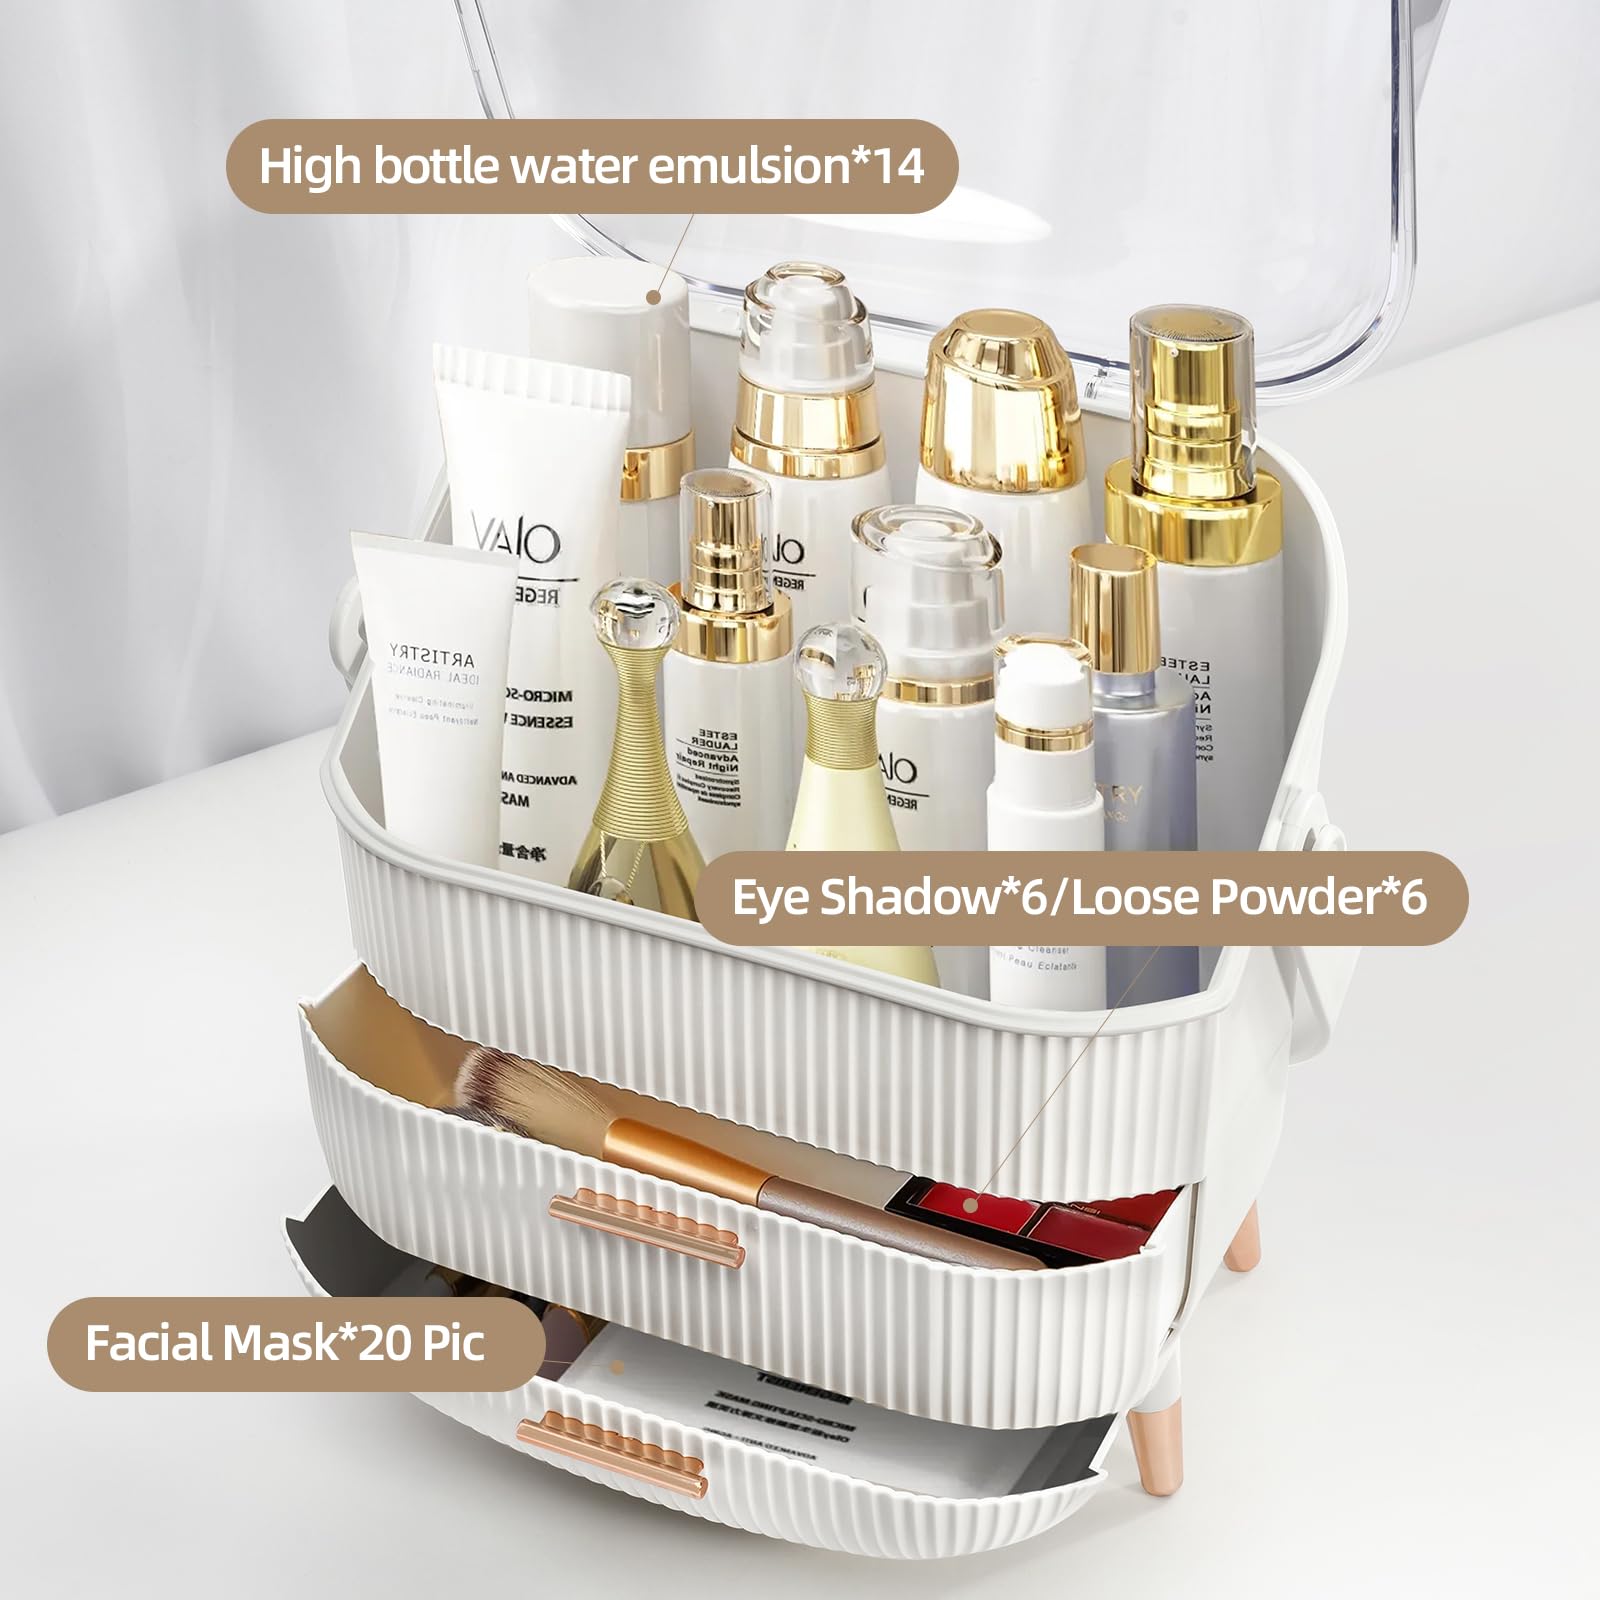 KQEBN Makeup organizer for vanity Skincare Organizer for Bathroom Countertop Vanity, Skin care product jewelry storage box.(WHITE)